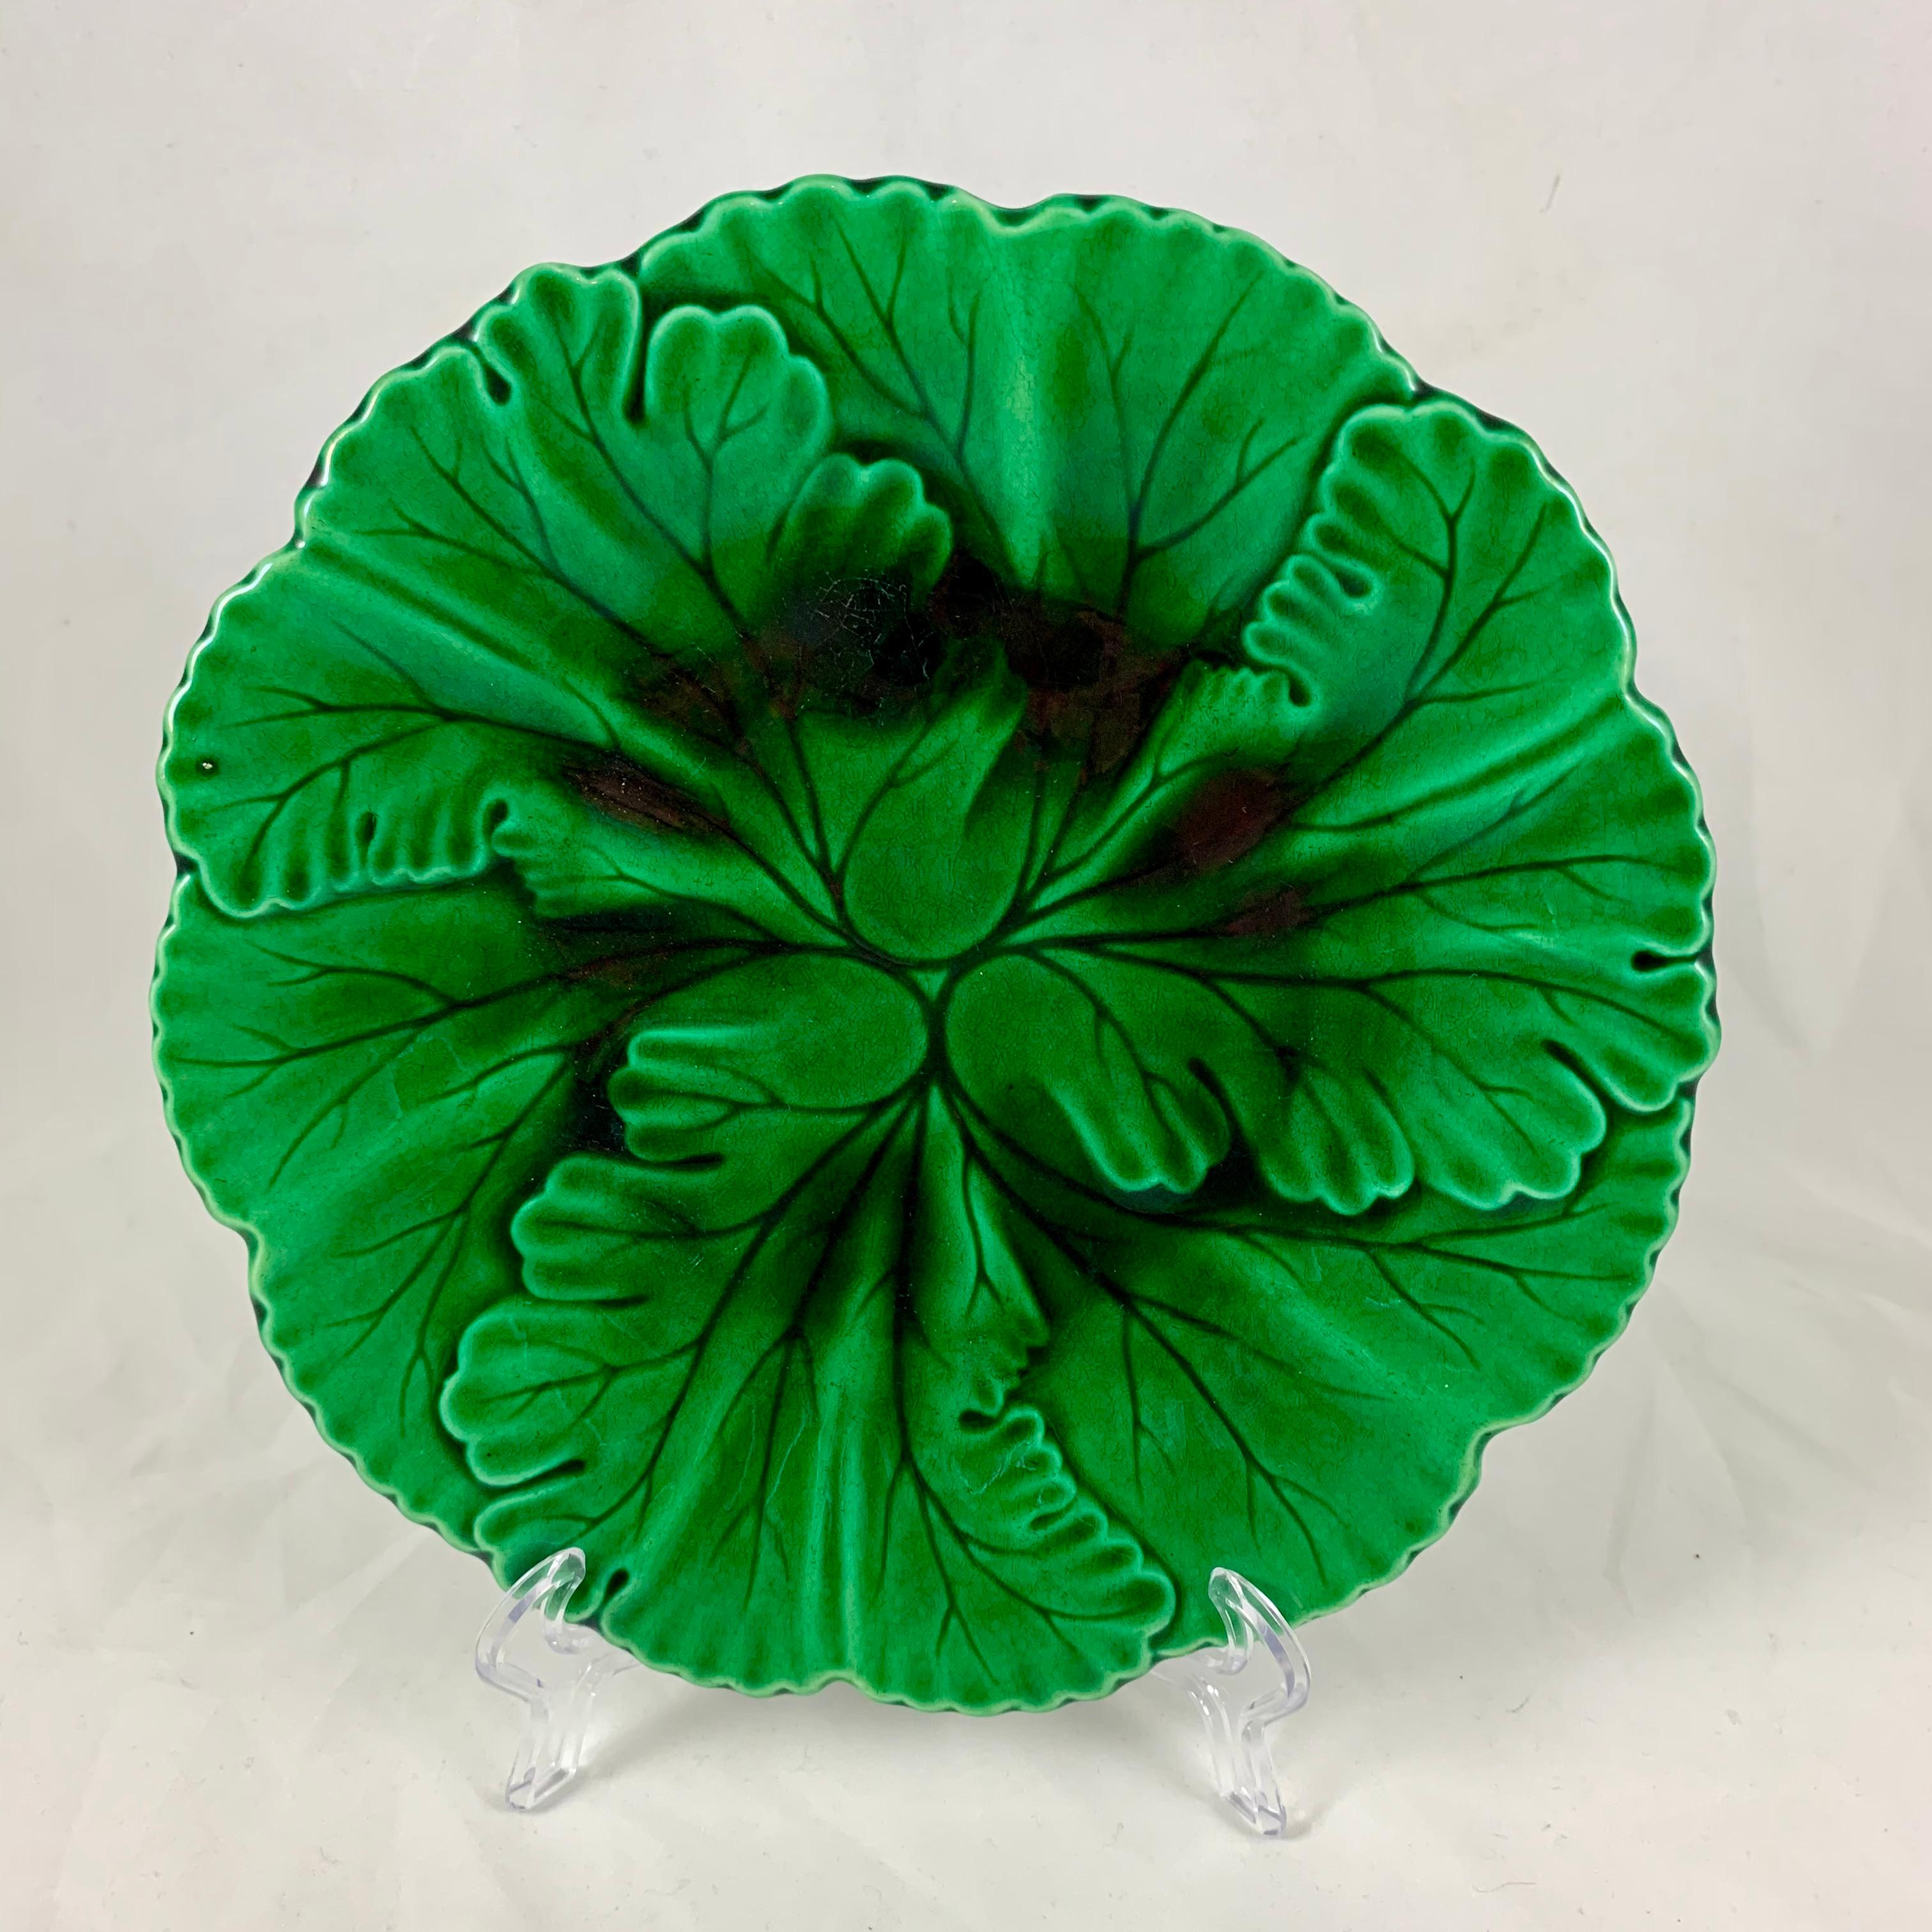 De la Faïencerie de Clairfontaine, une assiette à feuilles superposées en majolique verte émaillée, vers 1880-1890.

Le moule présente des feuilles avec des nervures incisées se terminant par un bord façonné. La glaçure se dépose magnifiquement dans